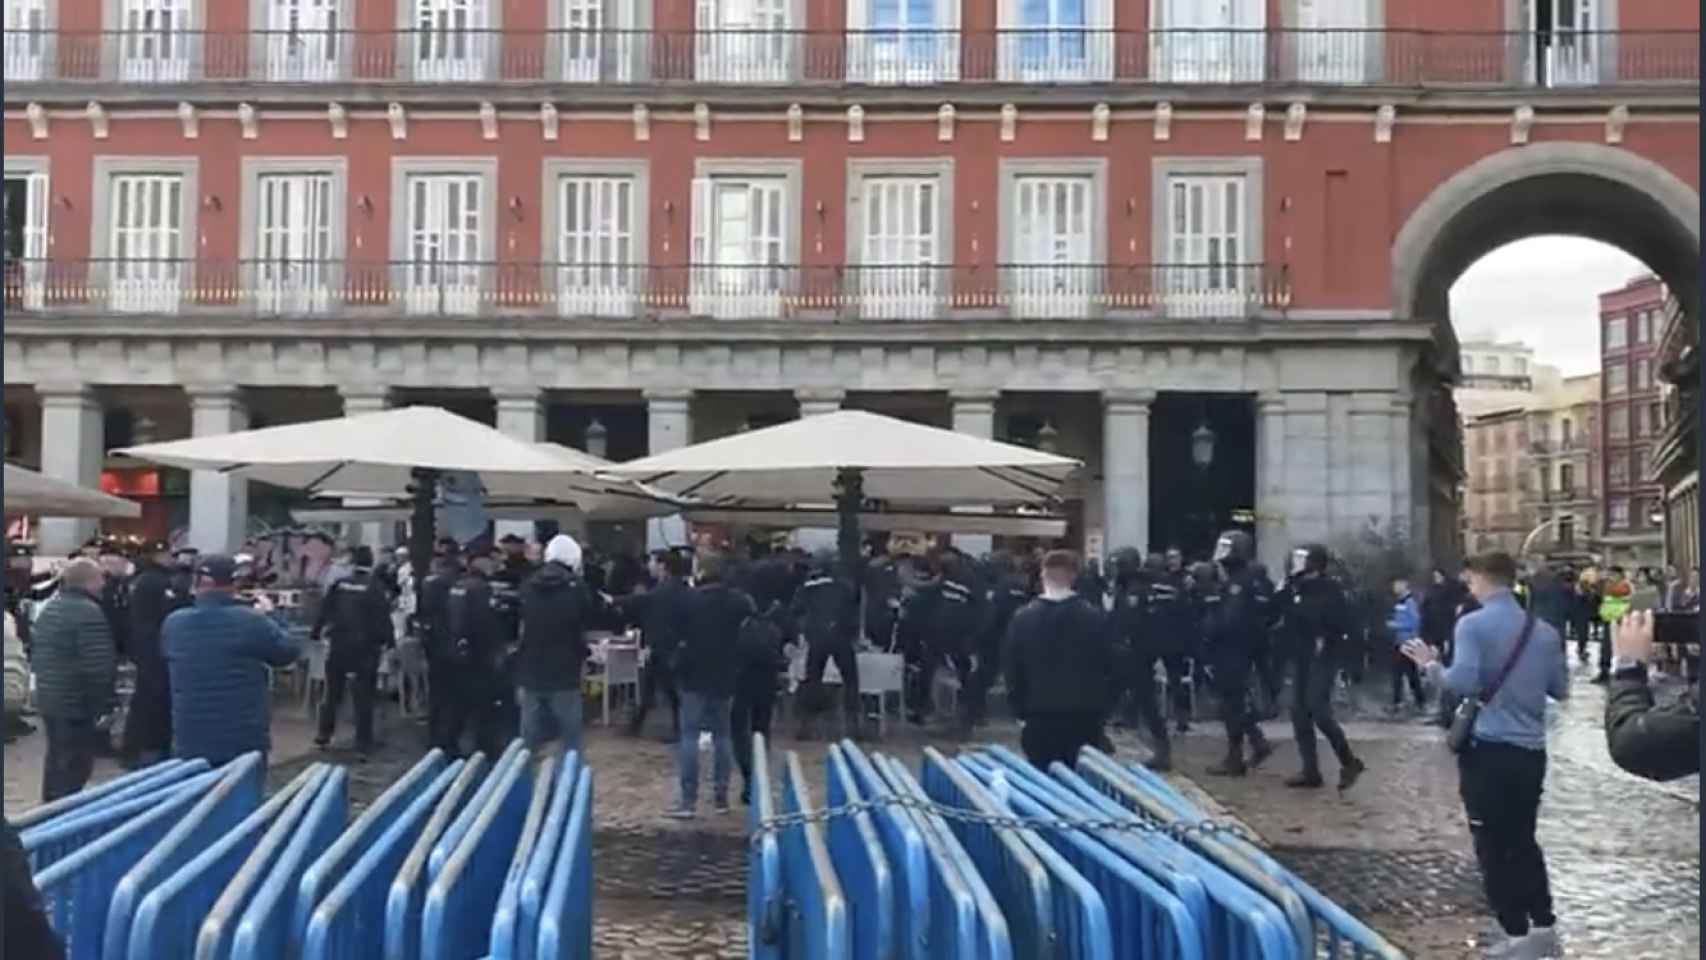 Caos en Madrid: ultras del Chelsea y el Manchester City provocan disturbios en la Plaza Mayor